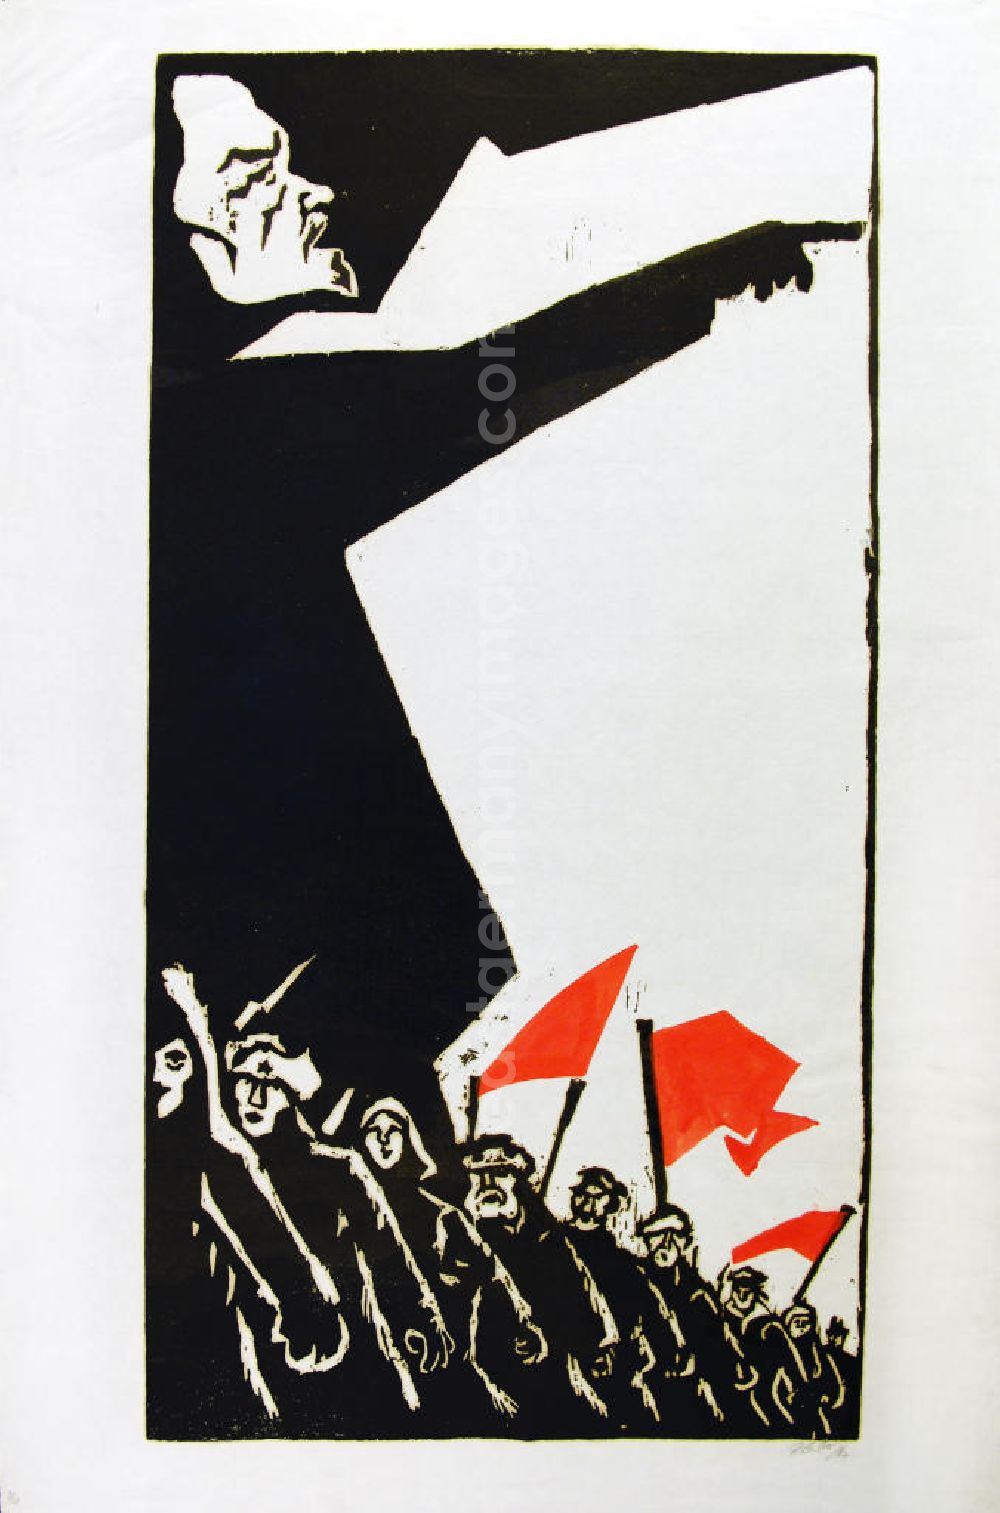 GDR picture archive: Berlin - Grafik von Herbert Sandberg Lenin aus dem Jahr 1967, 45,0x84,6cm Holzschnitt und farbiger Schablonendruck, handsigniert, 9/2